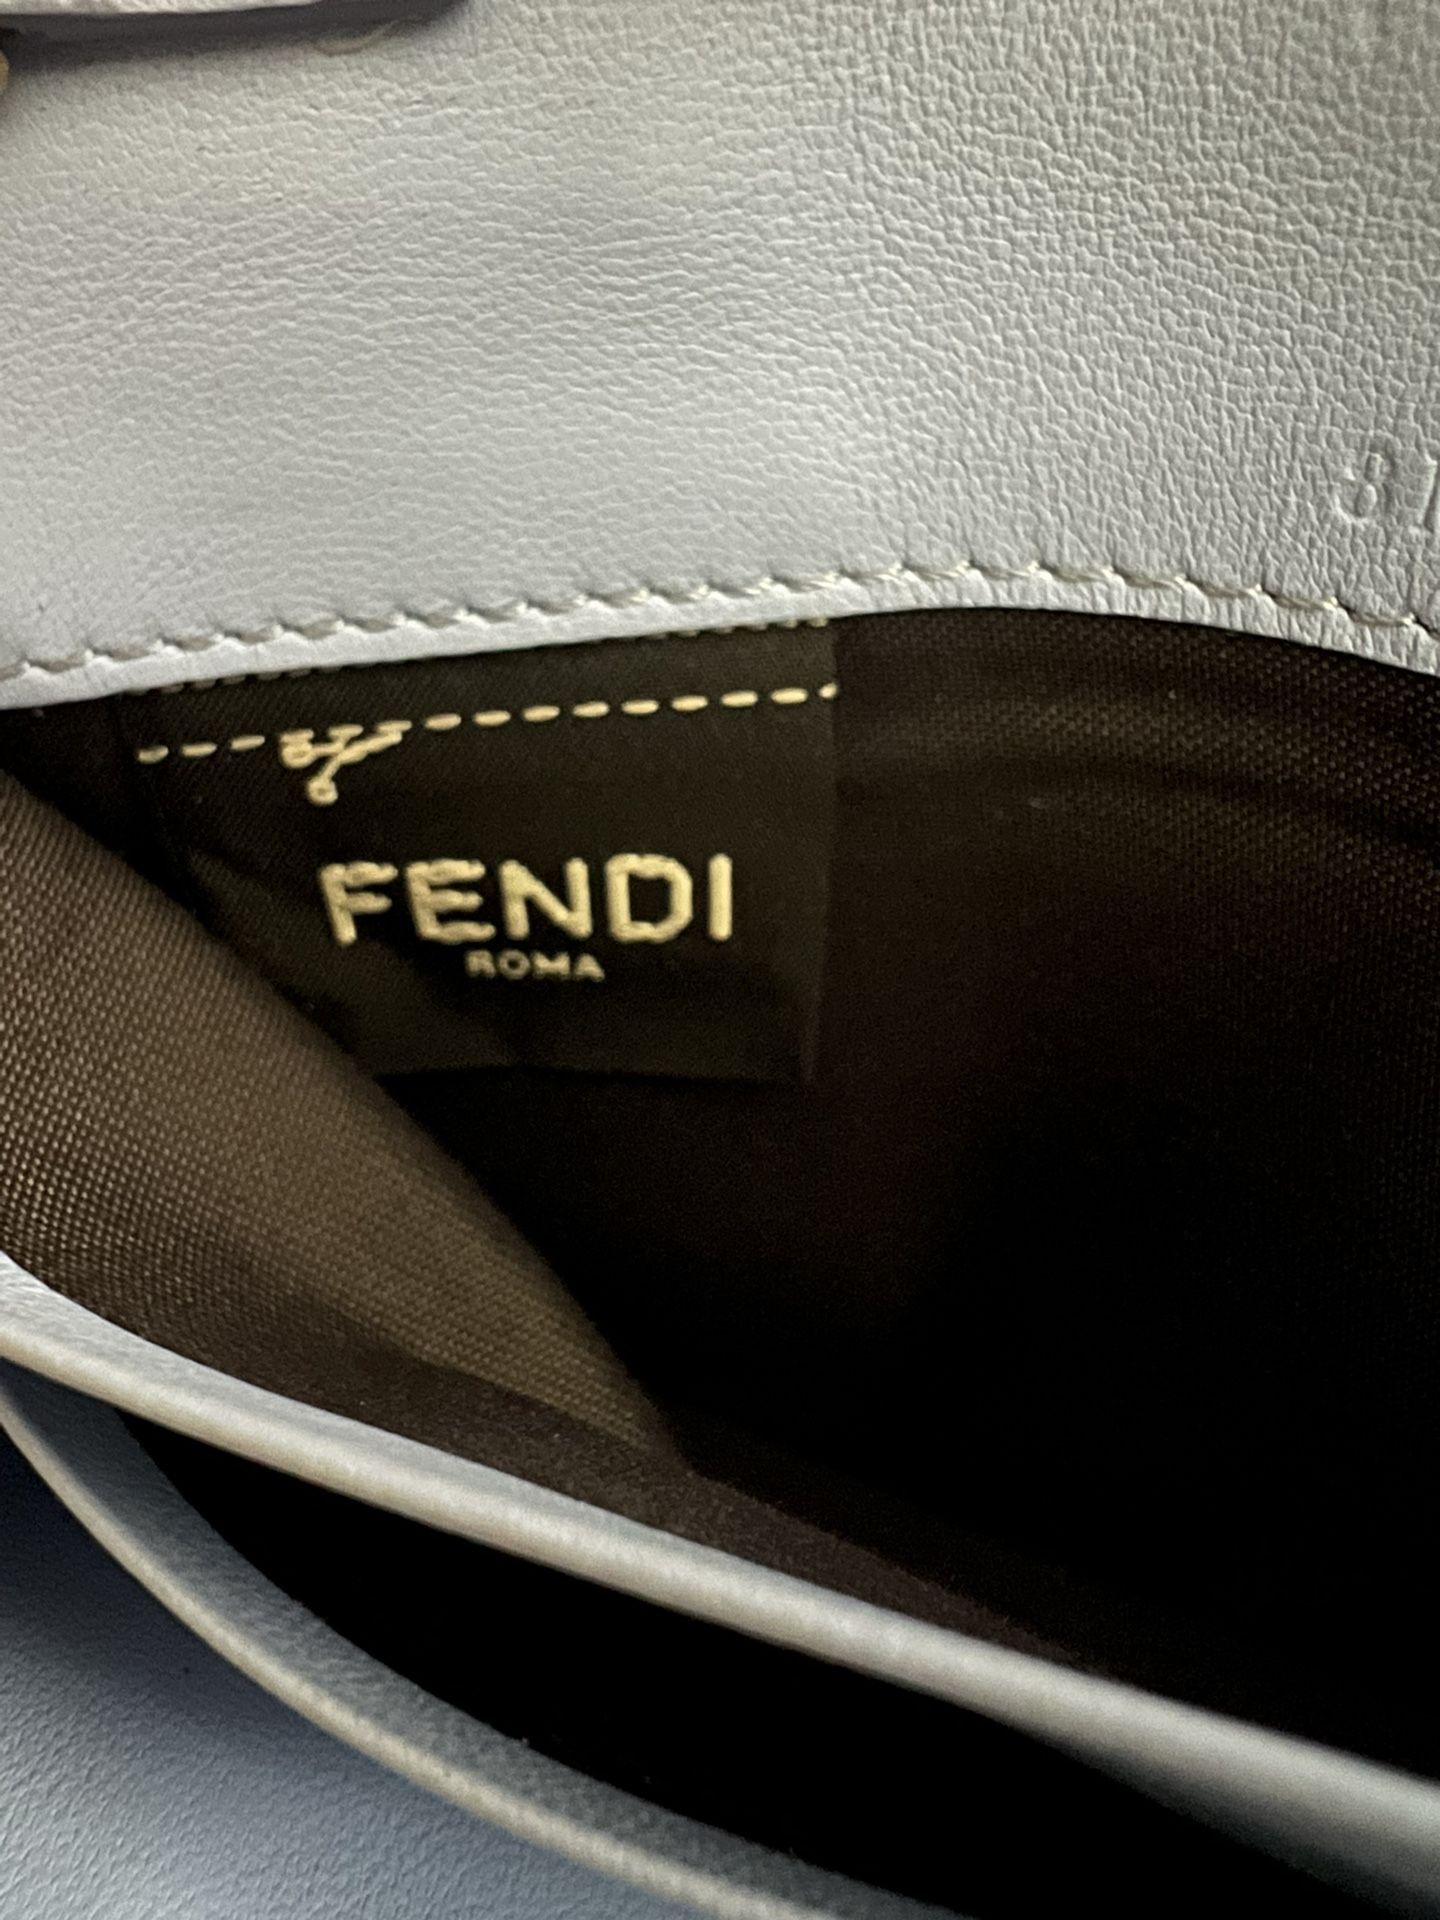 Fendi - Baguette Continental Wallet - Silver – Shop It